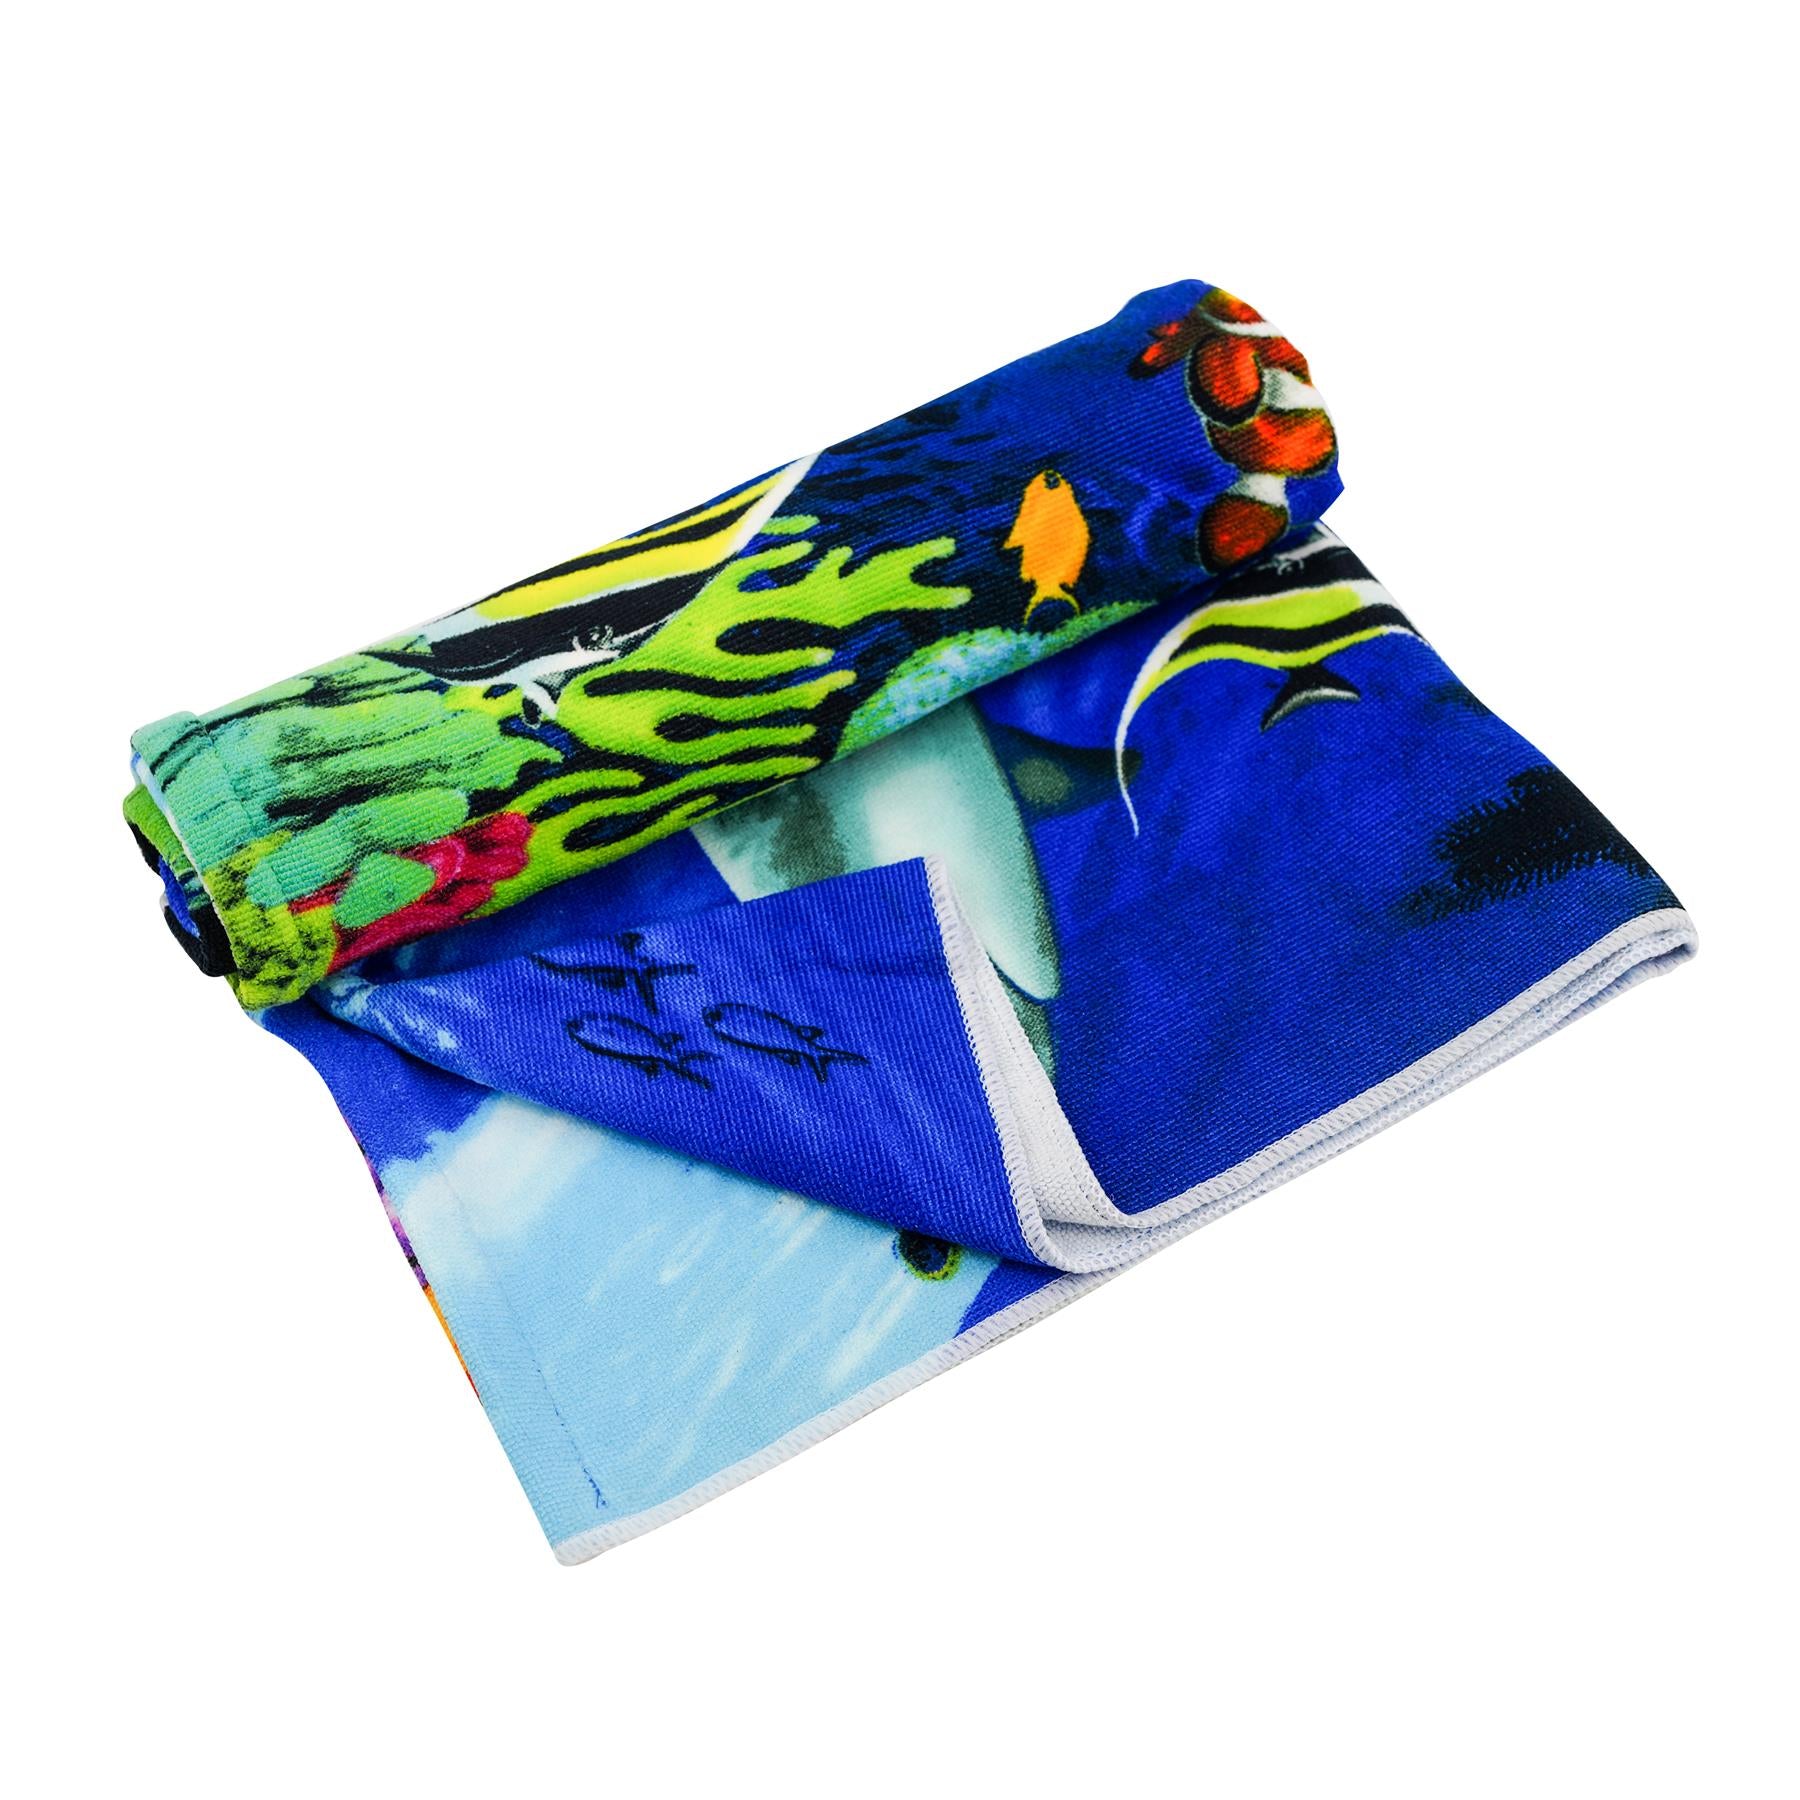 Ocean Turtles Design Large Towel by GEEZY - UKBuyZone